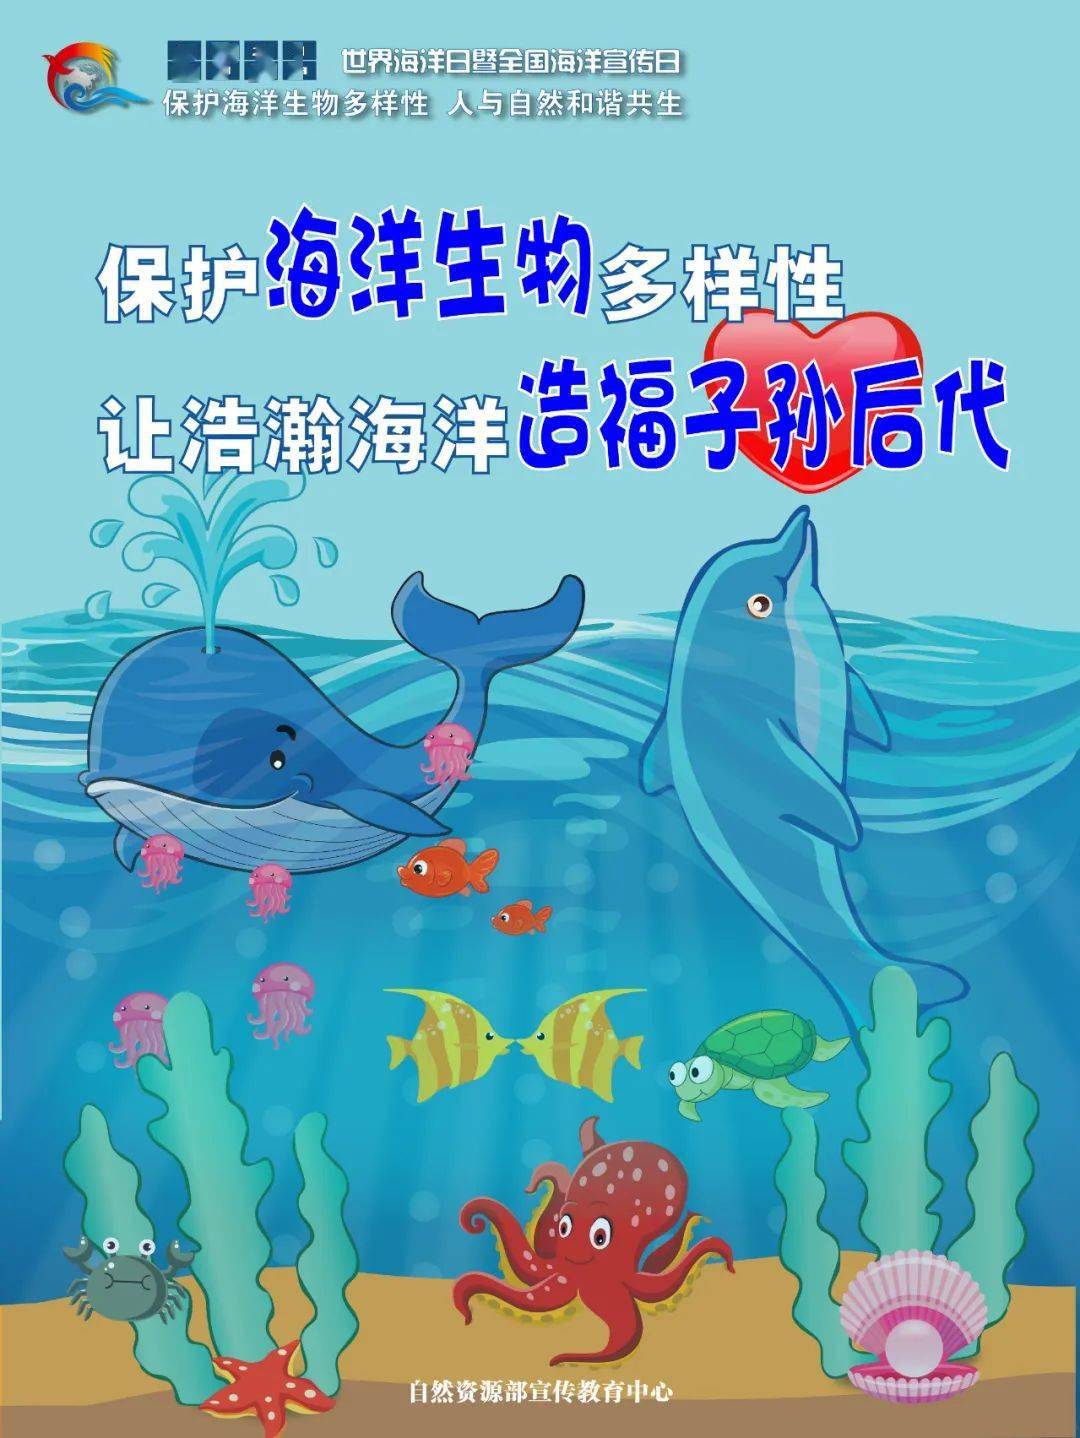 保护海洋生物多样性,保护海洋生态环境; 3